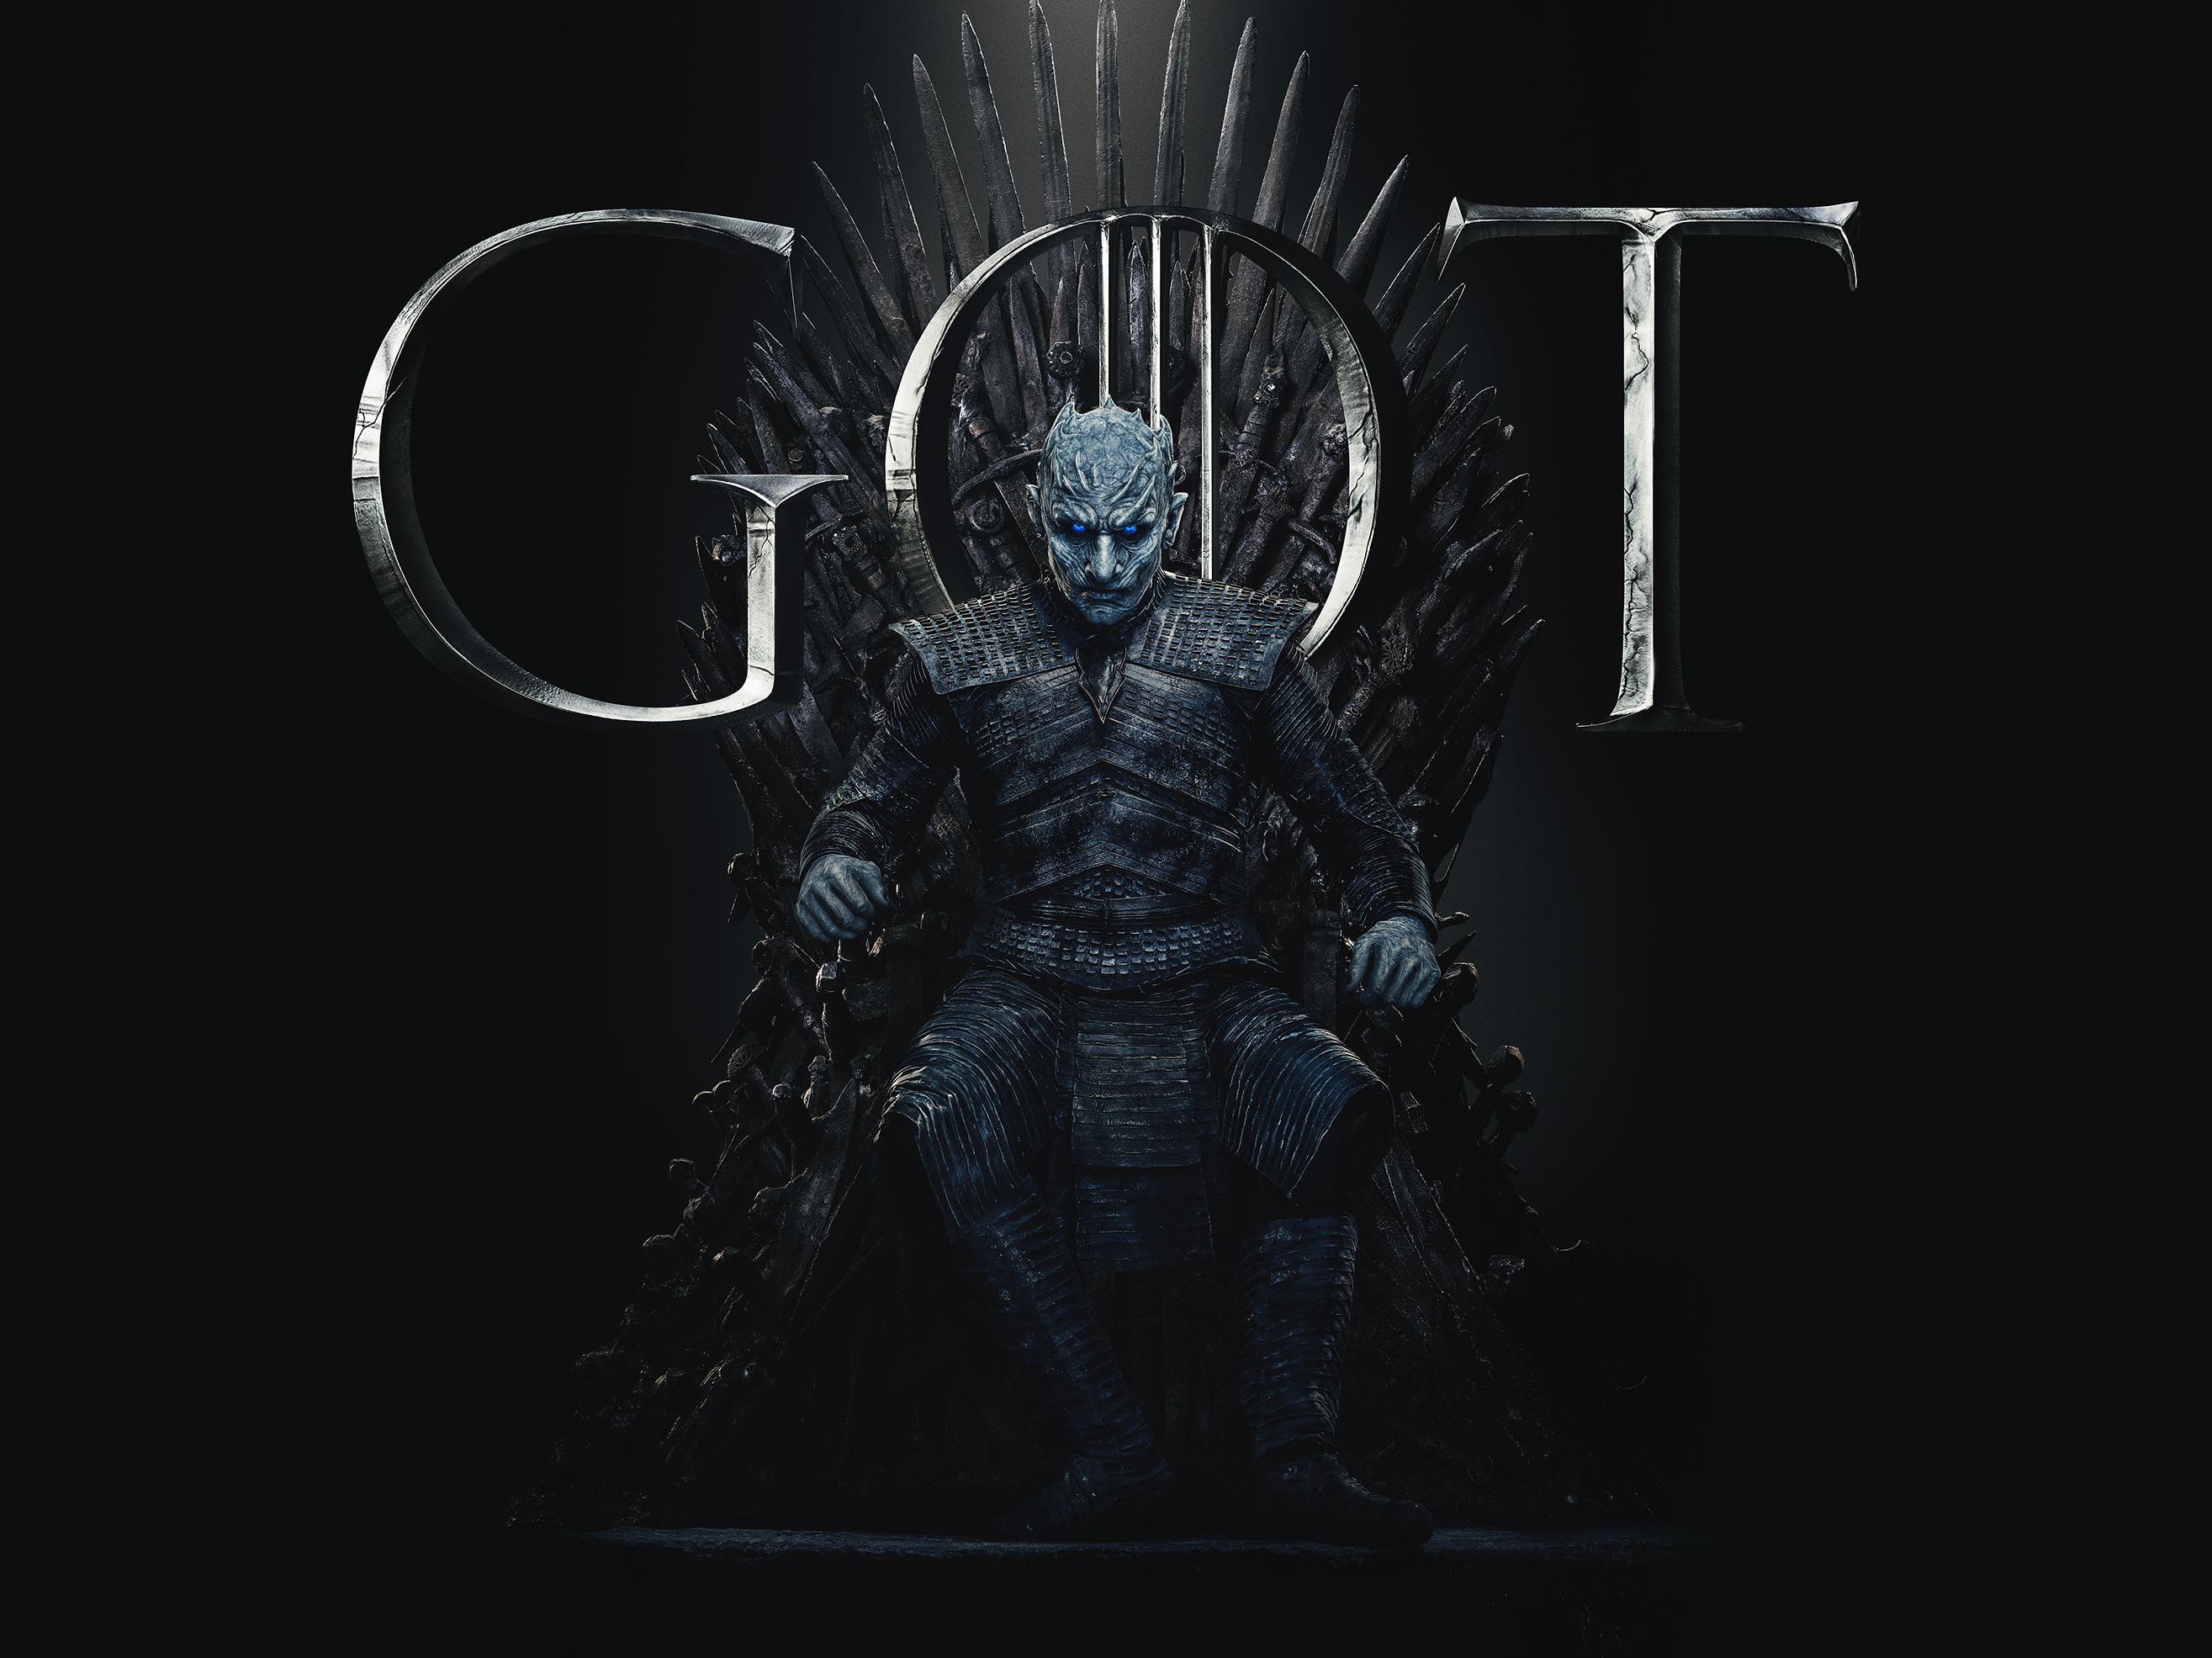 Free download Night King Game of Thrones Season 8 Poster Wallpaper